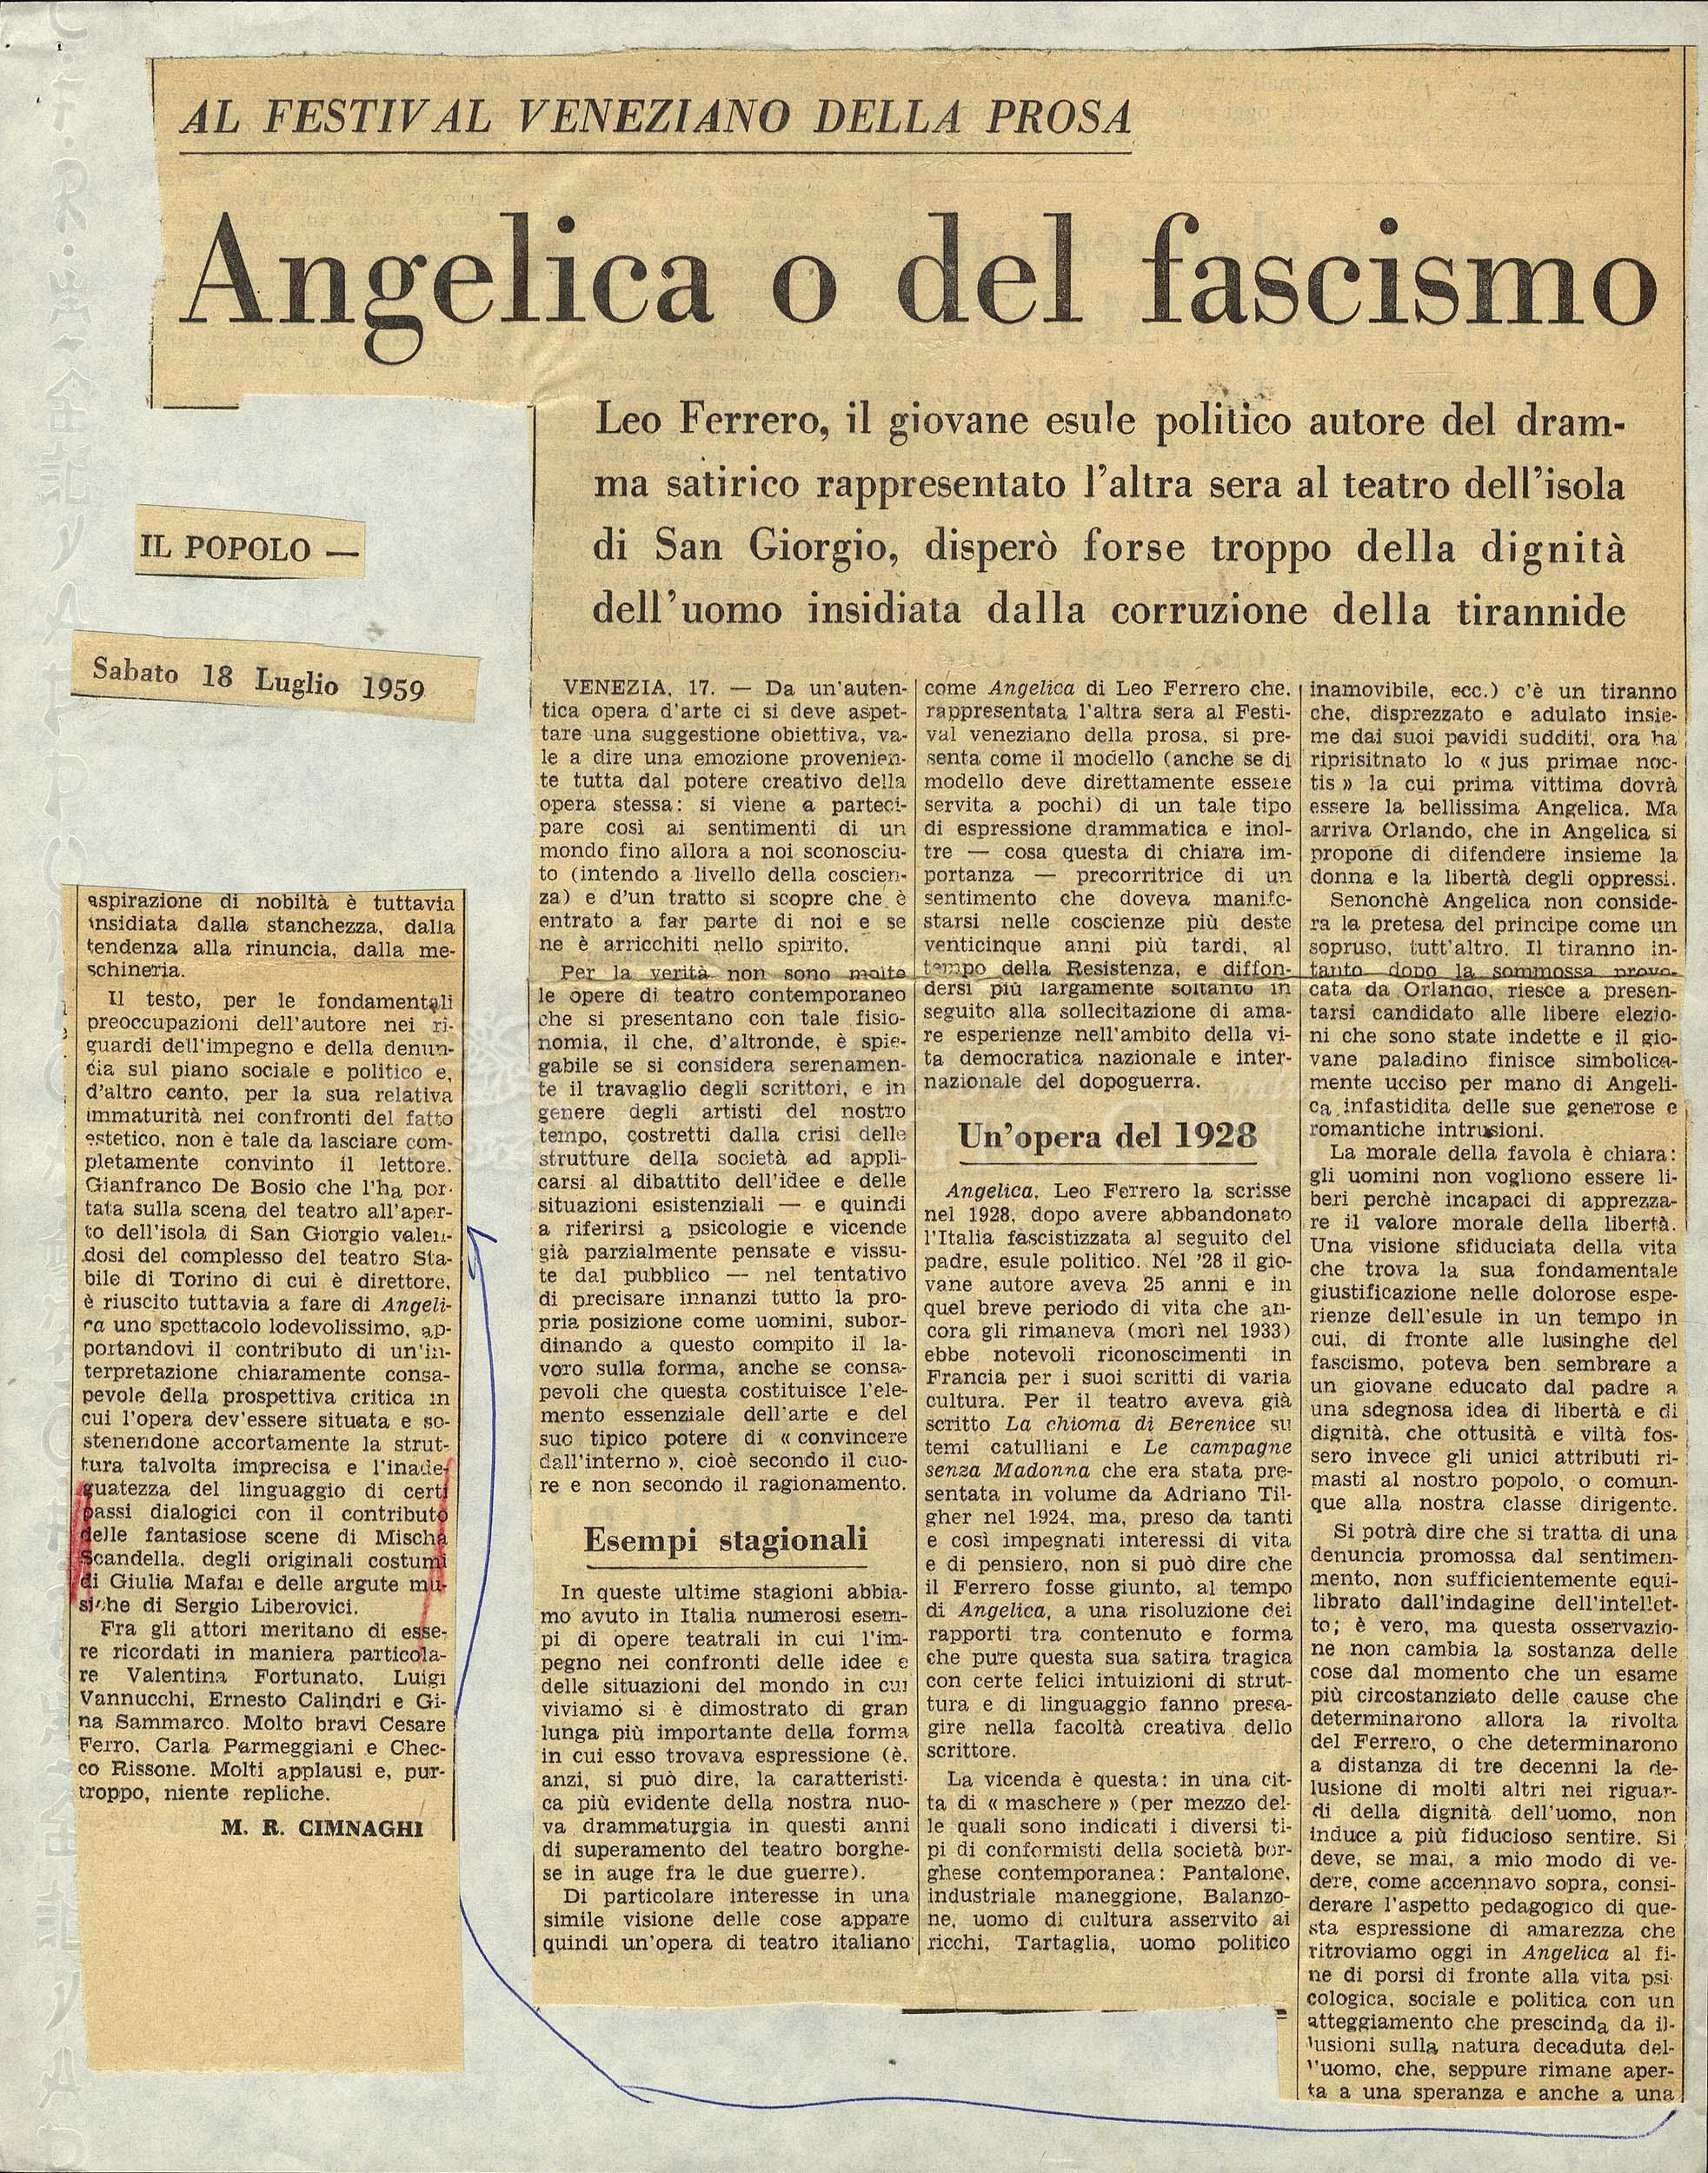 Angelica o del fascismo
				 : Al Festival veneziano della prosa 18 luglio 1959